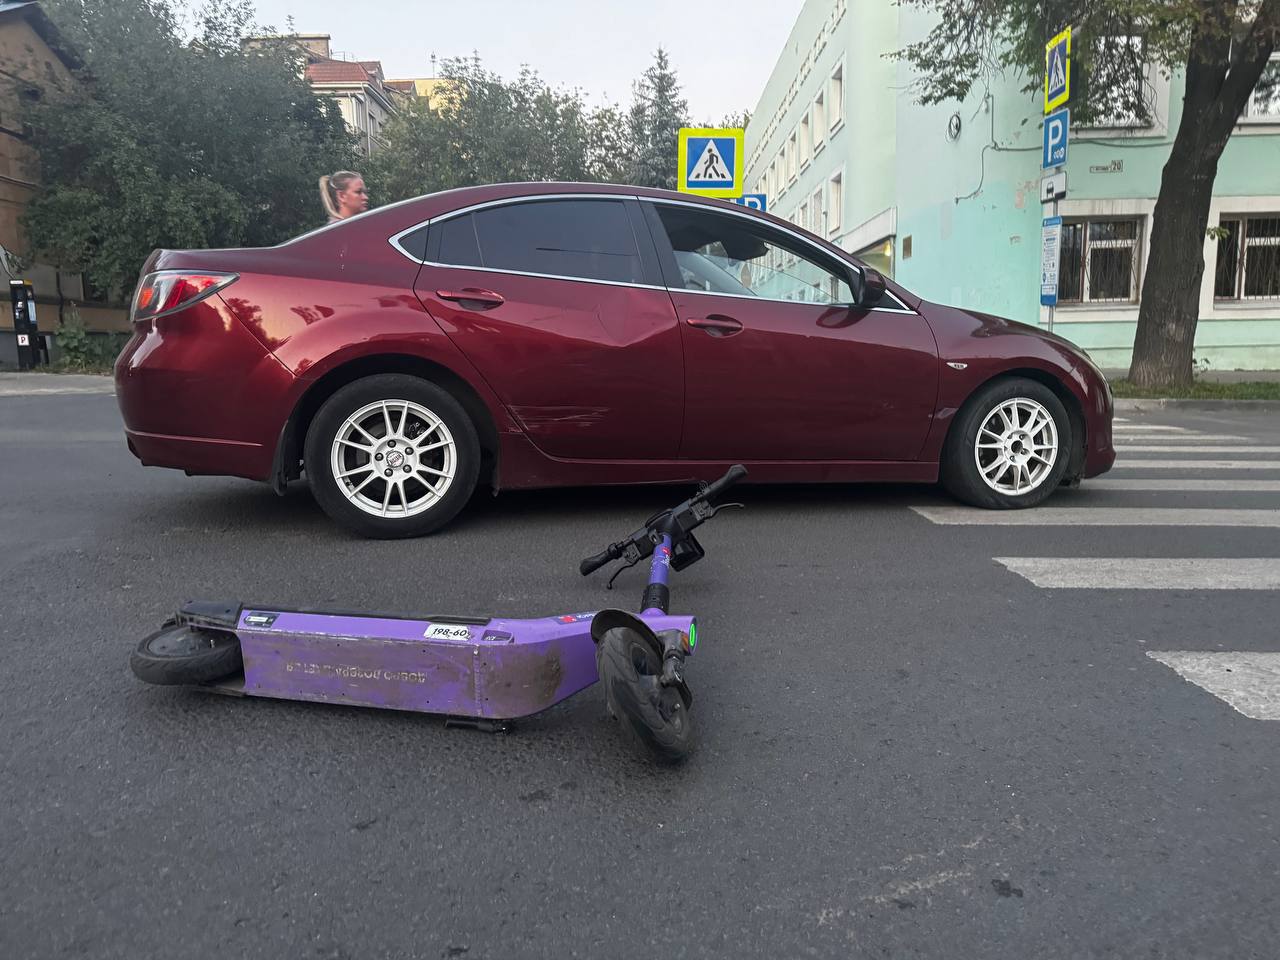 Легковушка сбила троих подростков на одном самокате в Нижнем Новгороде